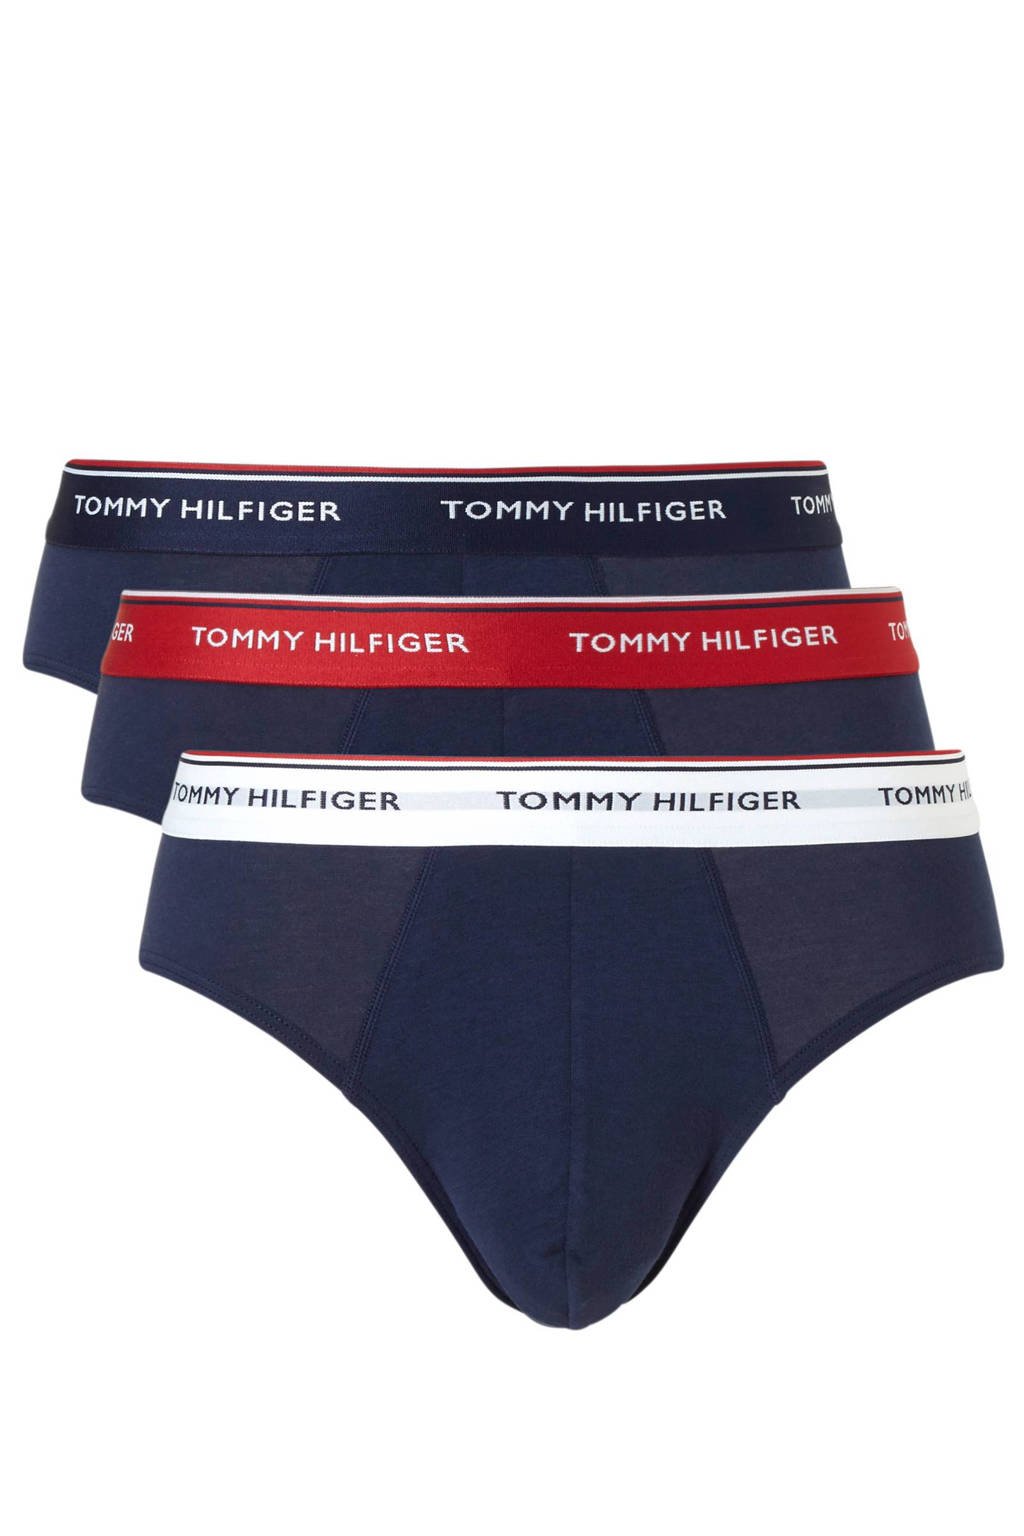 Geniet huurling Wederzijds Tommy Hilfiger slip (set van 3) donkerblauw | wehkamp